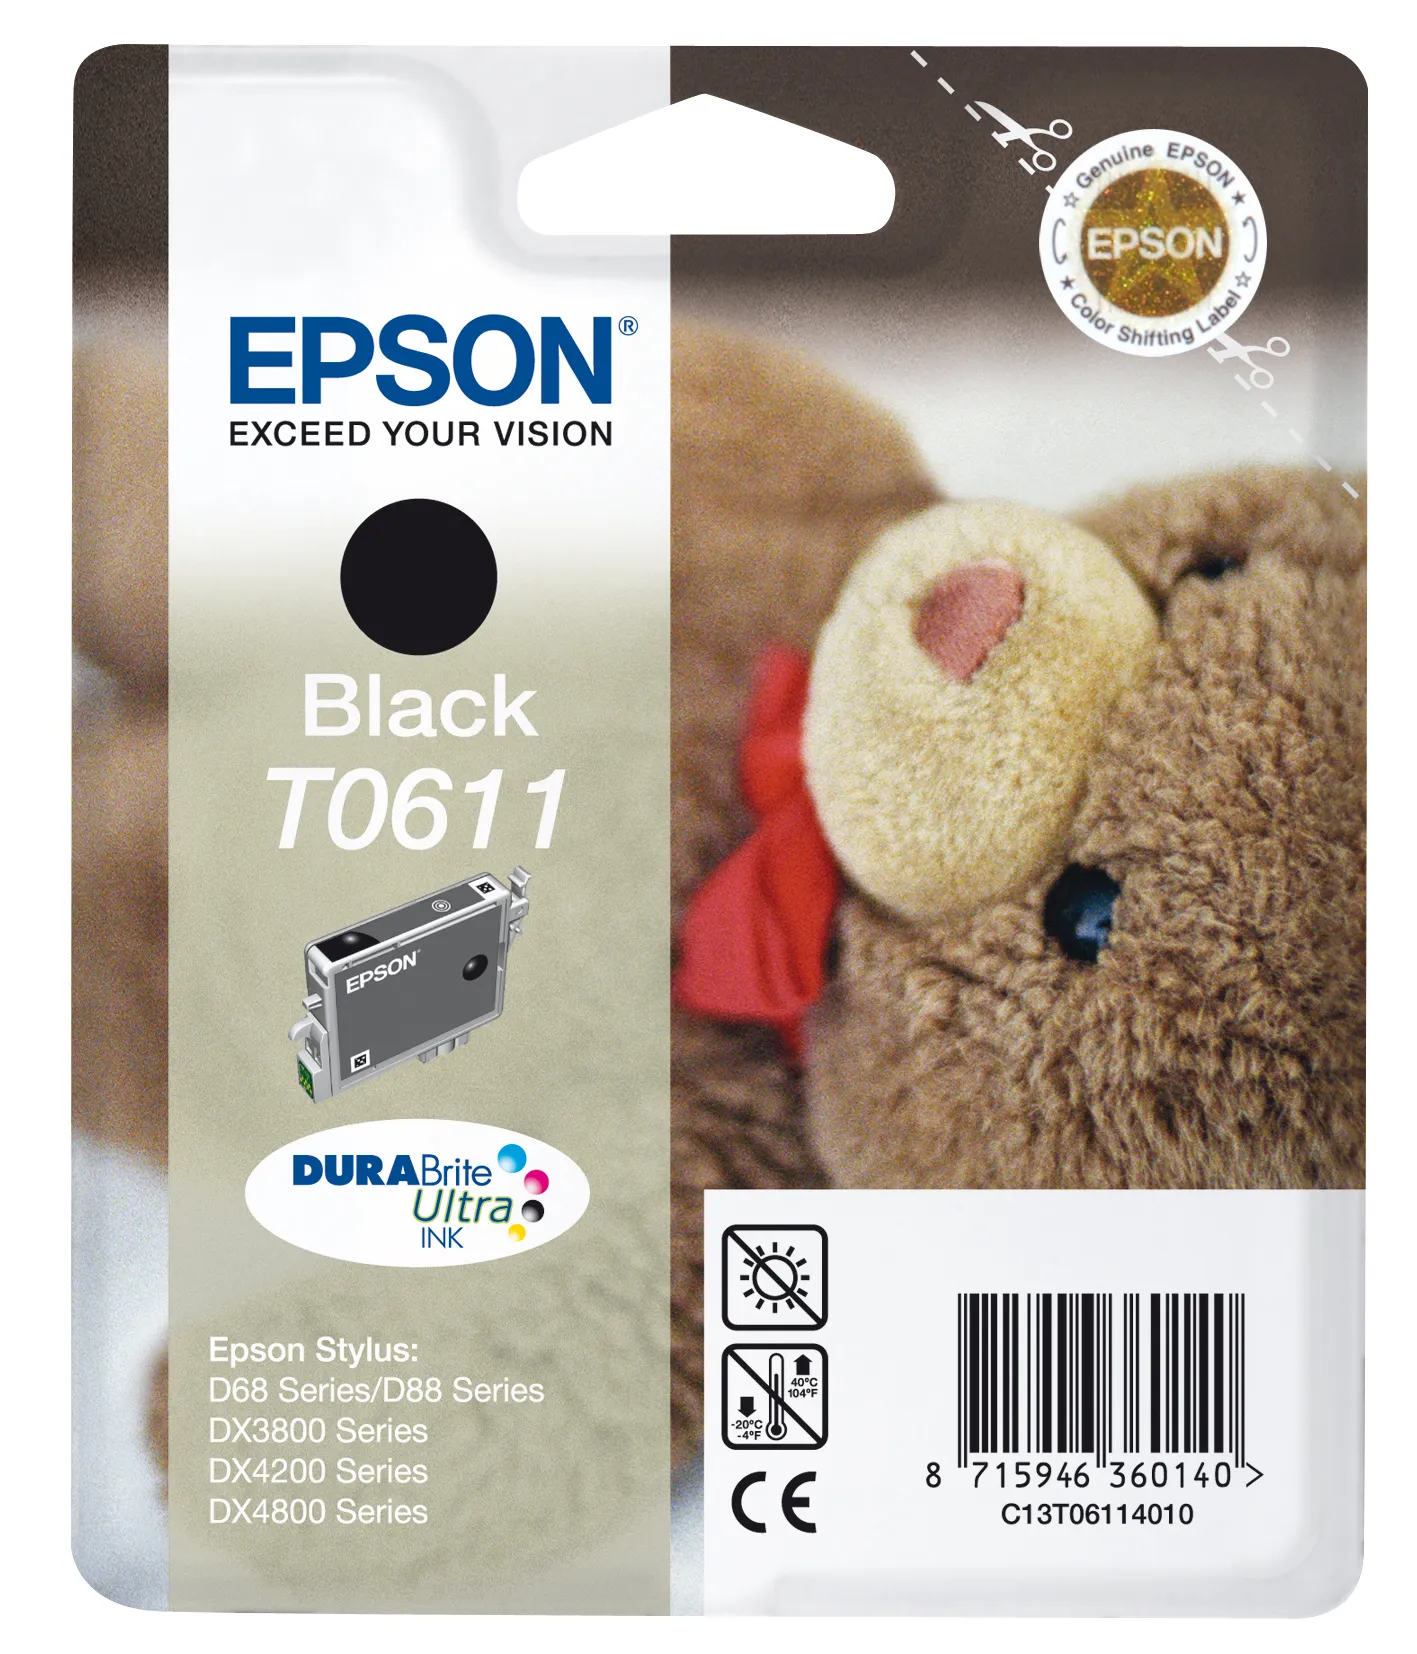 Vente Epson Teddybear Cartouche "Ourson" - Encre DURABrite Epson au meilleur prix - visuel 4